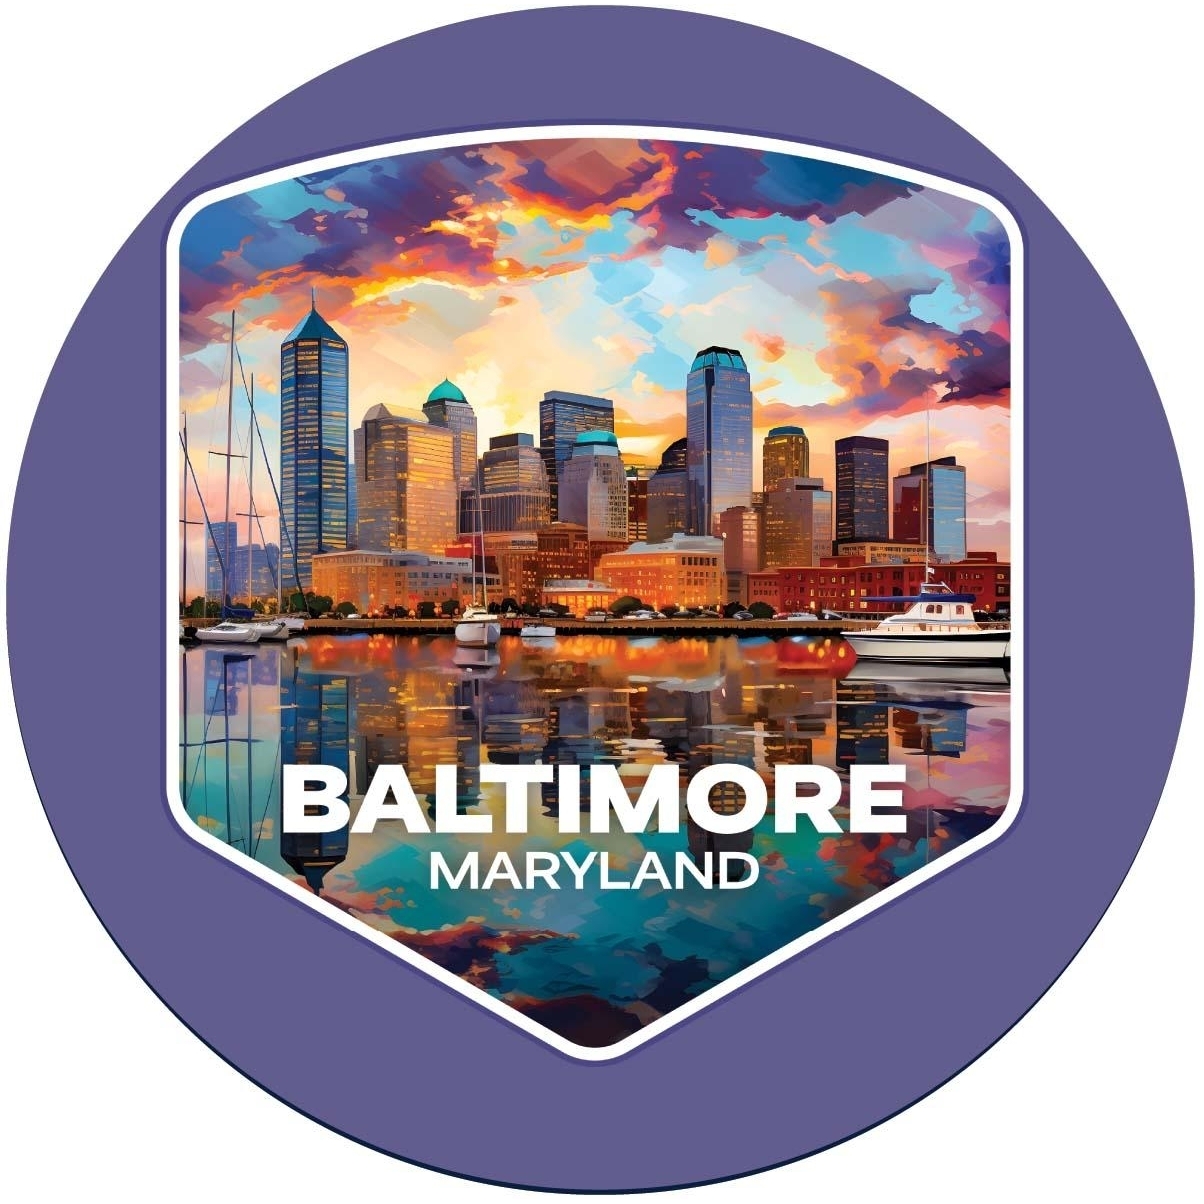 Baltimore Maryland A Souvenir Round Vinyl Decal Sticker - 2-Inch